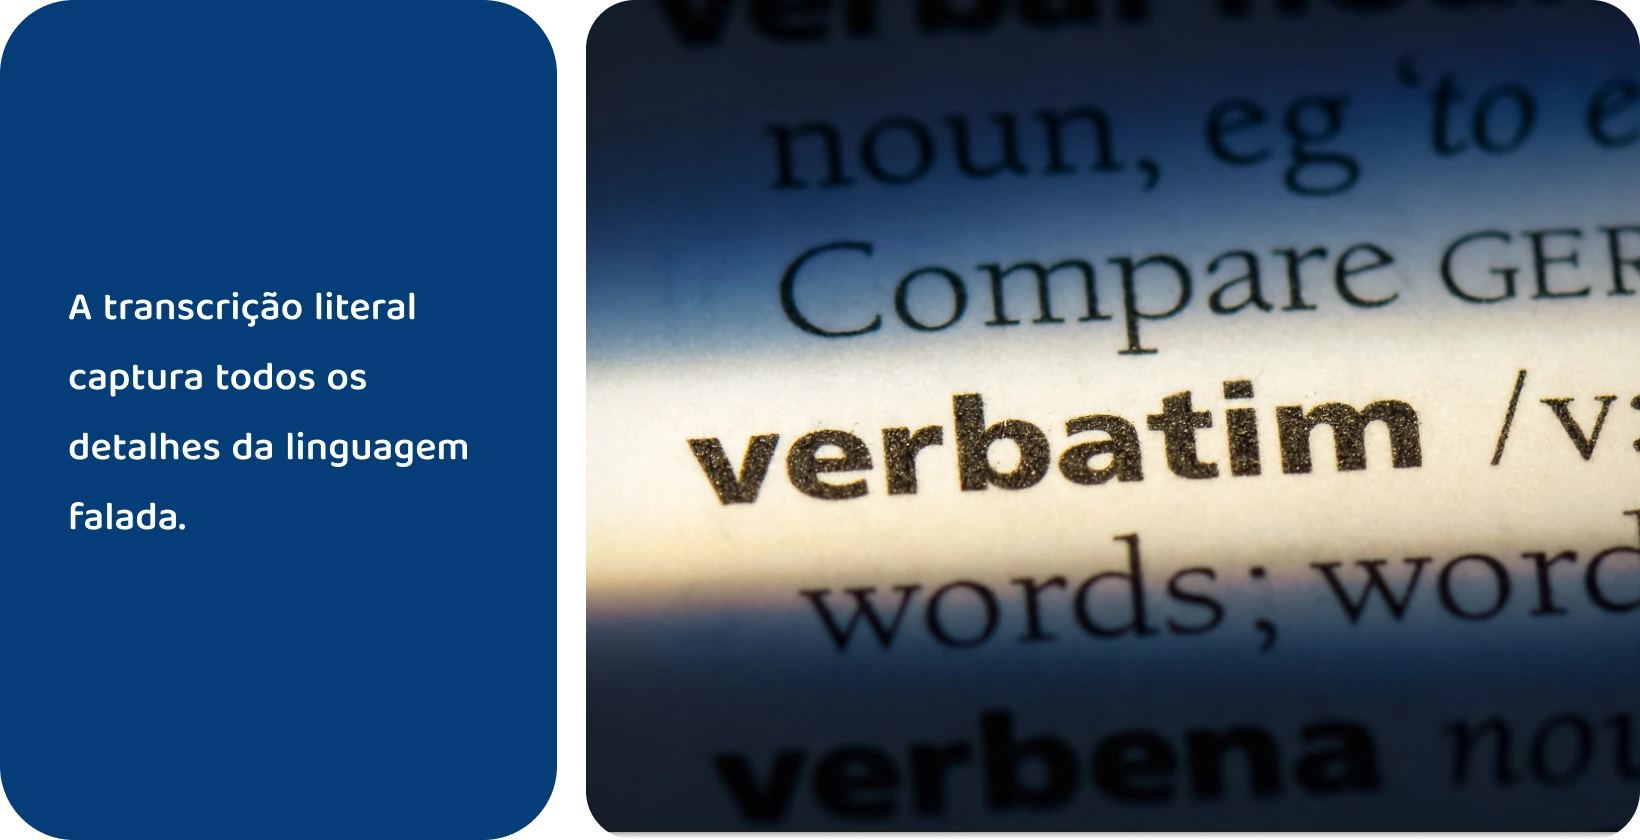 Verbete do dicionário da palavra "verbatim" em destaque, representando métodos de transcrição precisos.